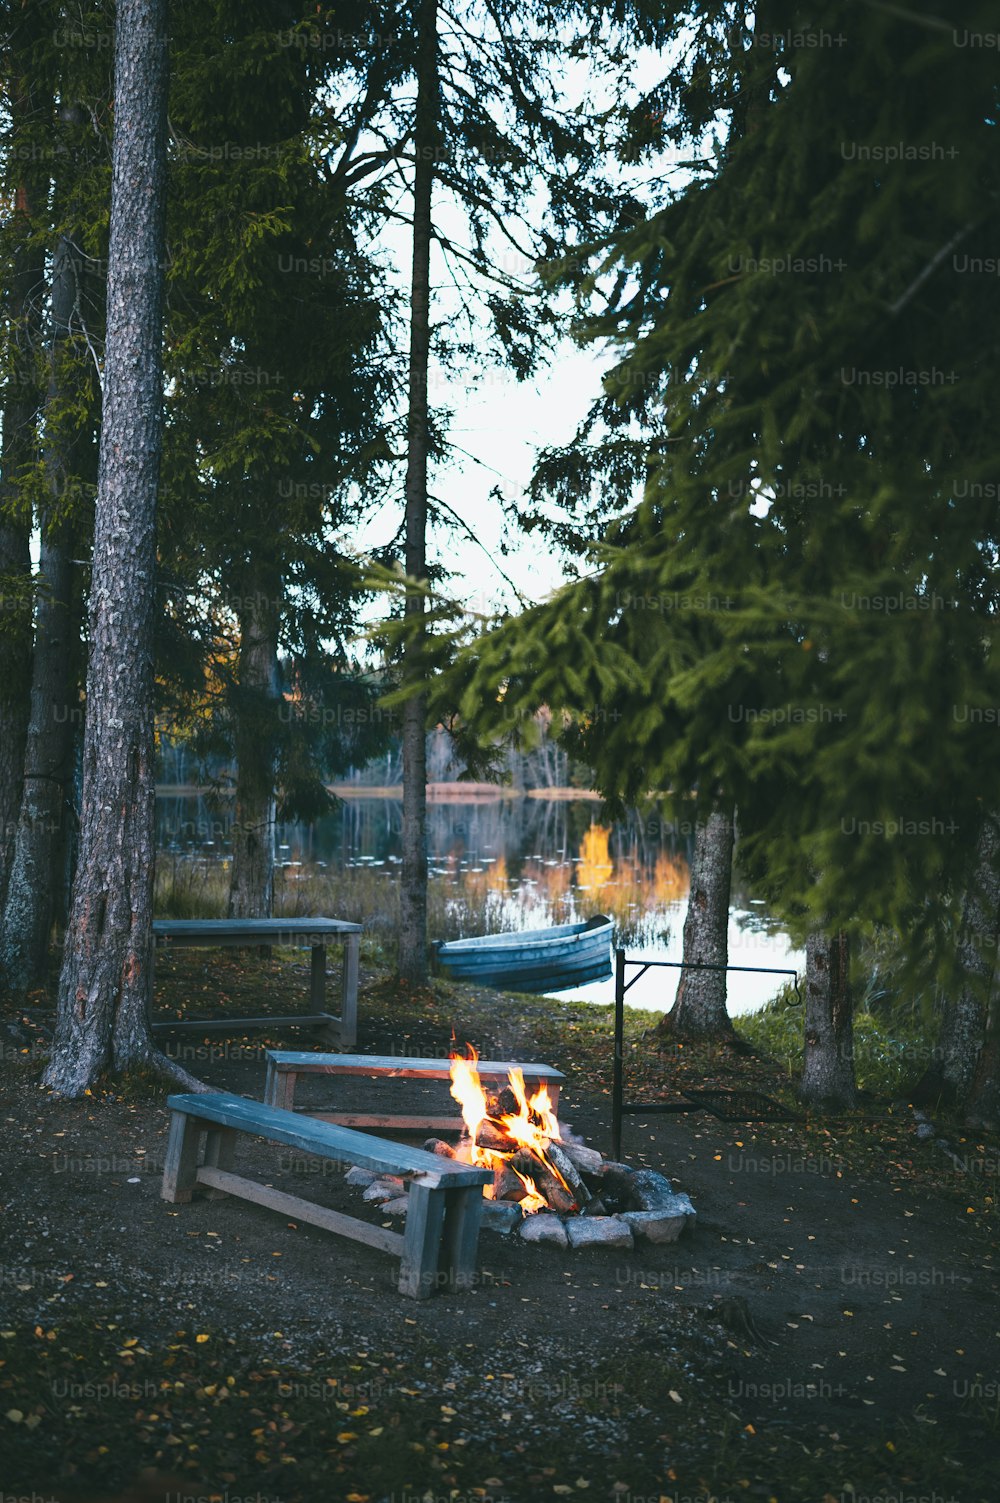 Un pozo de fuego en medio de un bosque